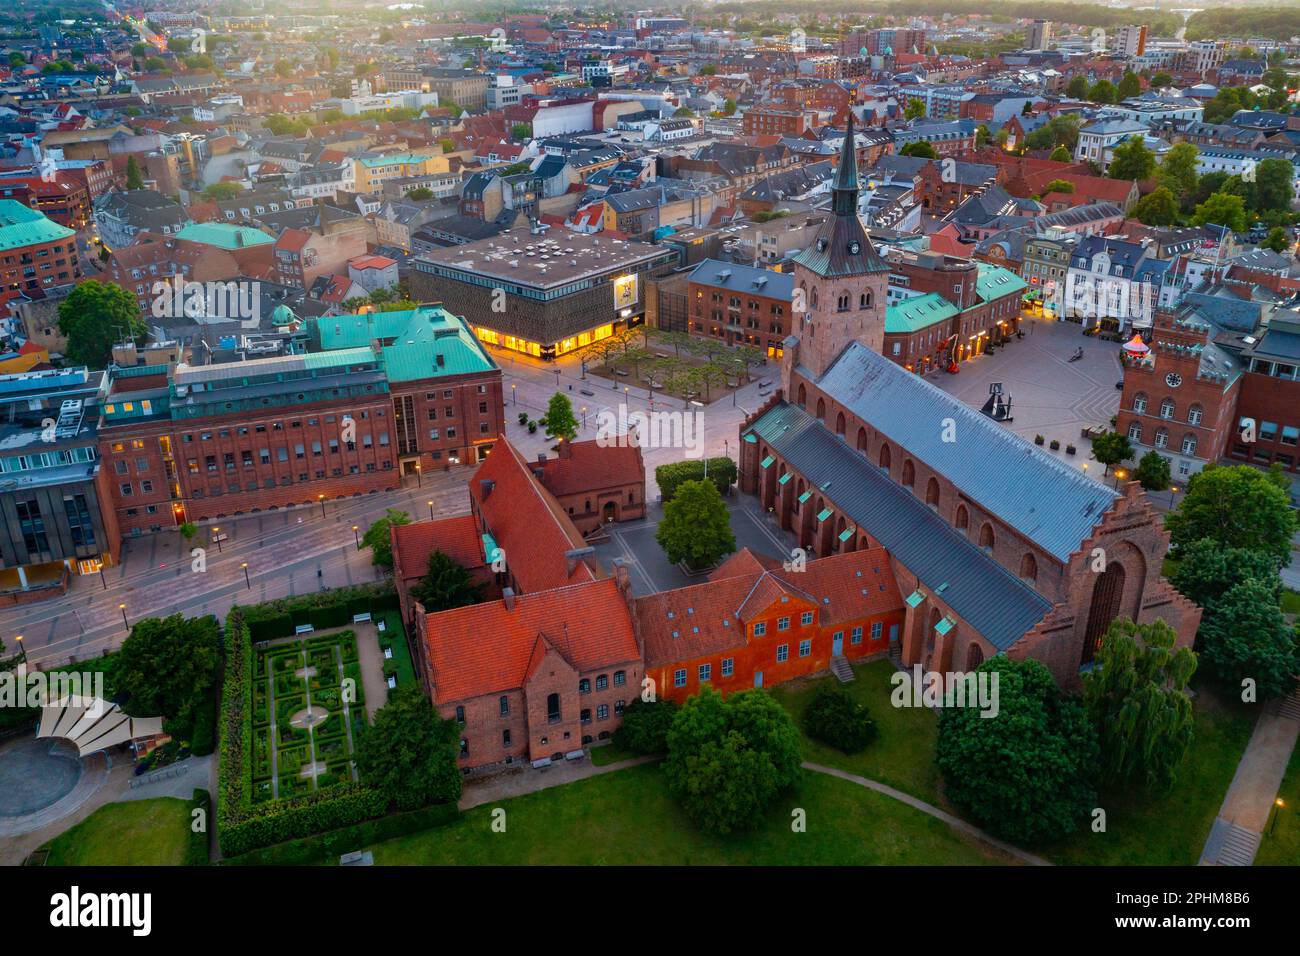 Vue panoramique sur la rue au coucher du soleil Cathédrale de Canute dans la ville danoise d'Odense. Banque D'Images